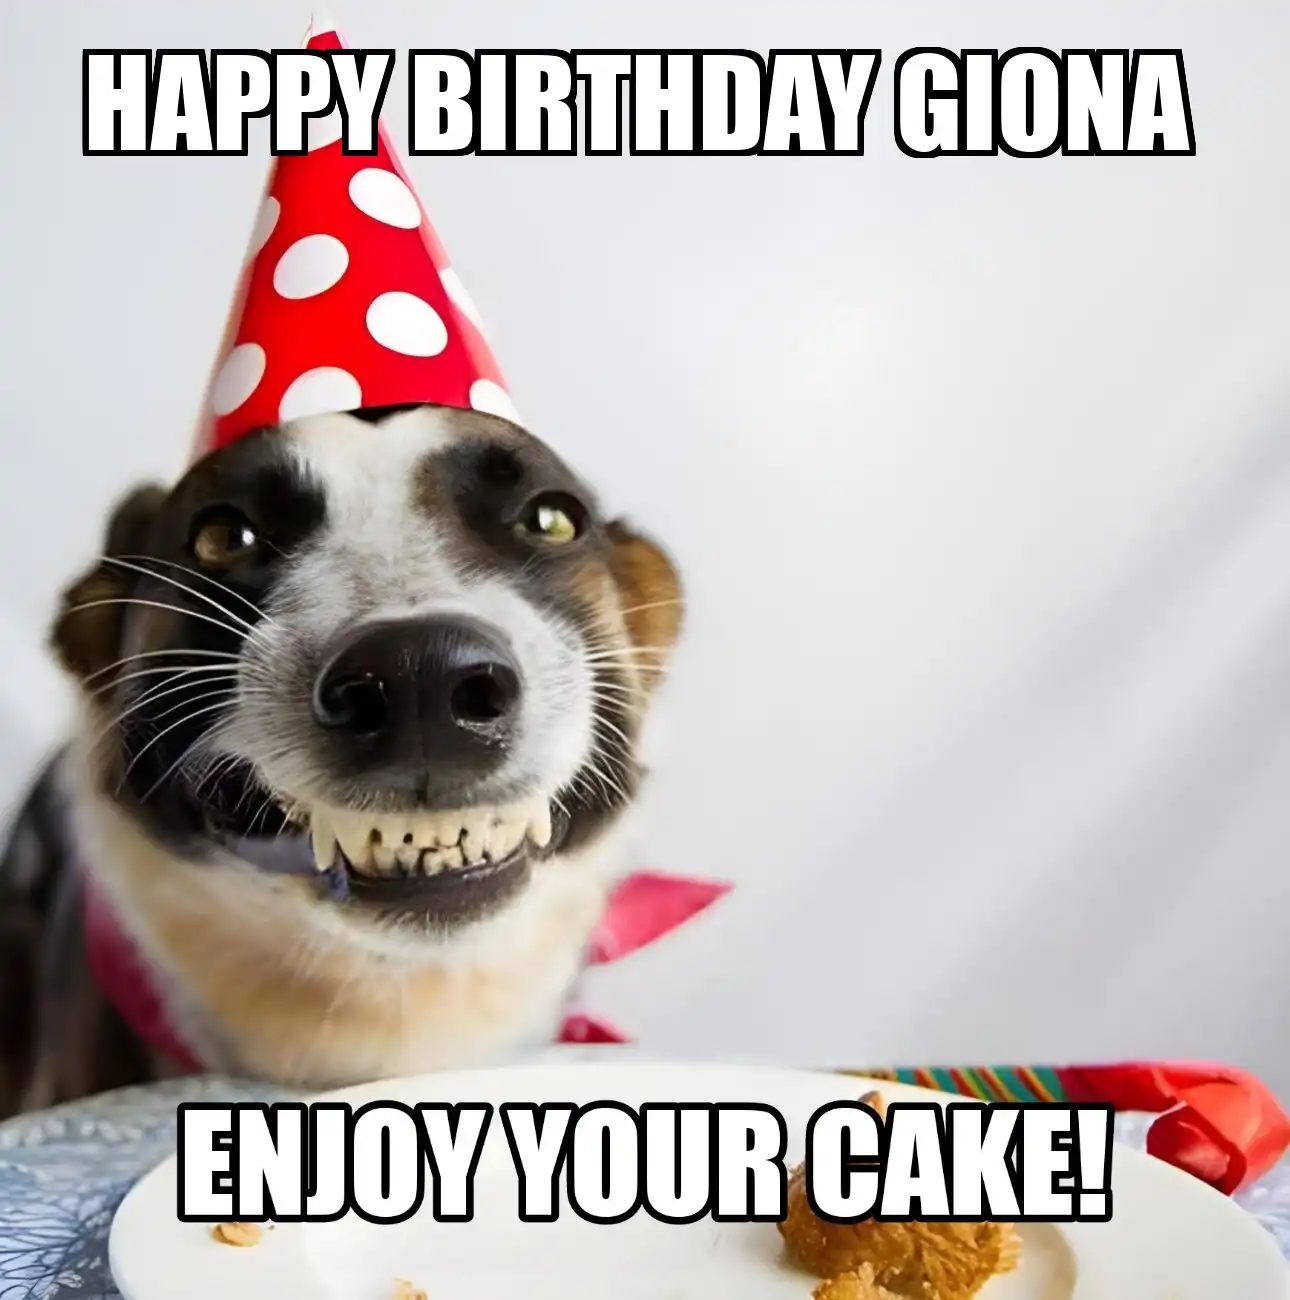 Happy Birthday Giona Enjoy Your Cake Dog Meme